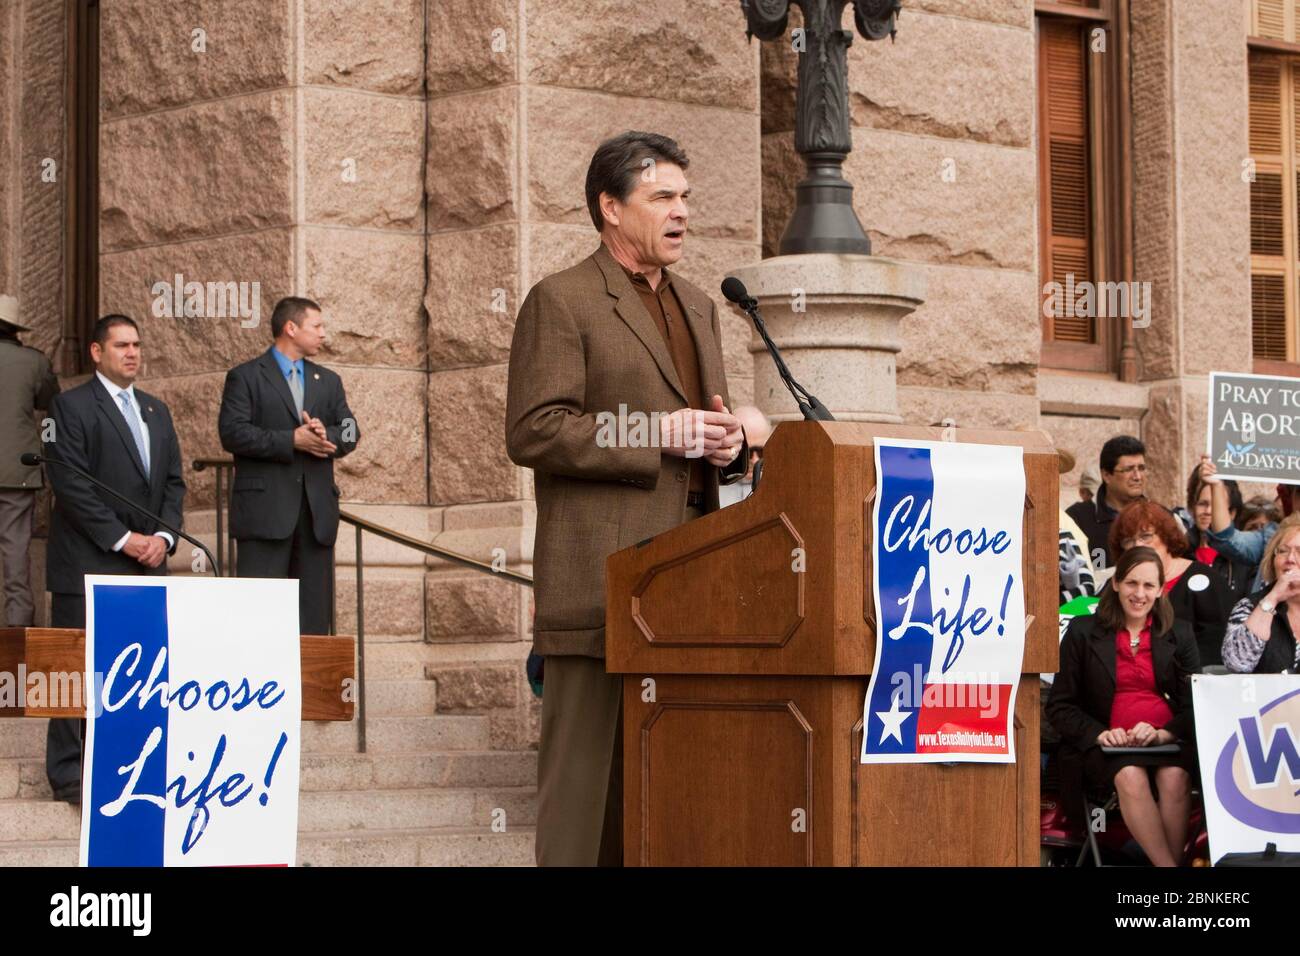 Austin, Texas, EE.UU., 26 de enero de 2013: Gobernador republicano de Texas. Rick Perry se dirige a una gran multitud reunida en el Capitolio de Texas para una manifestación anual contra el aborto y pro-vida. Foto de stock